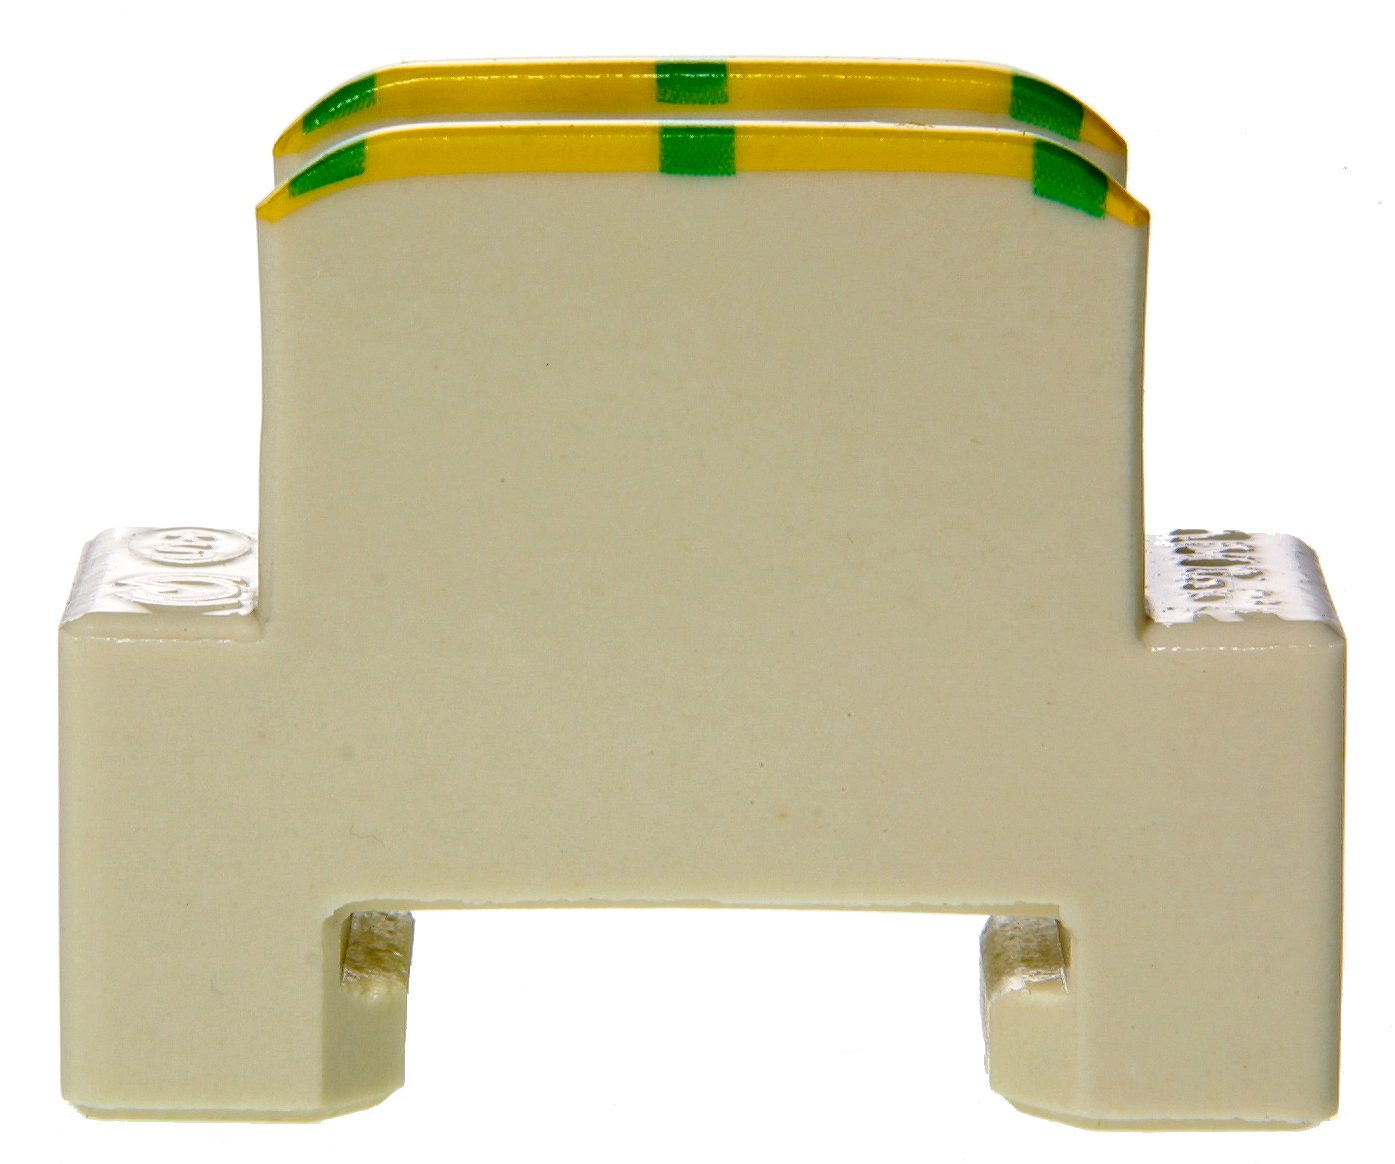 Terminale di derivazione in steatite 2.5mm2 verde-giallo